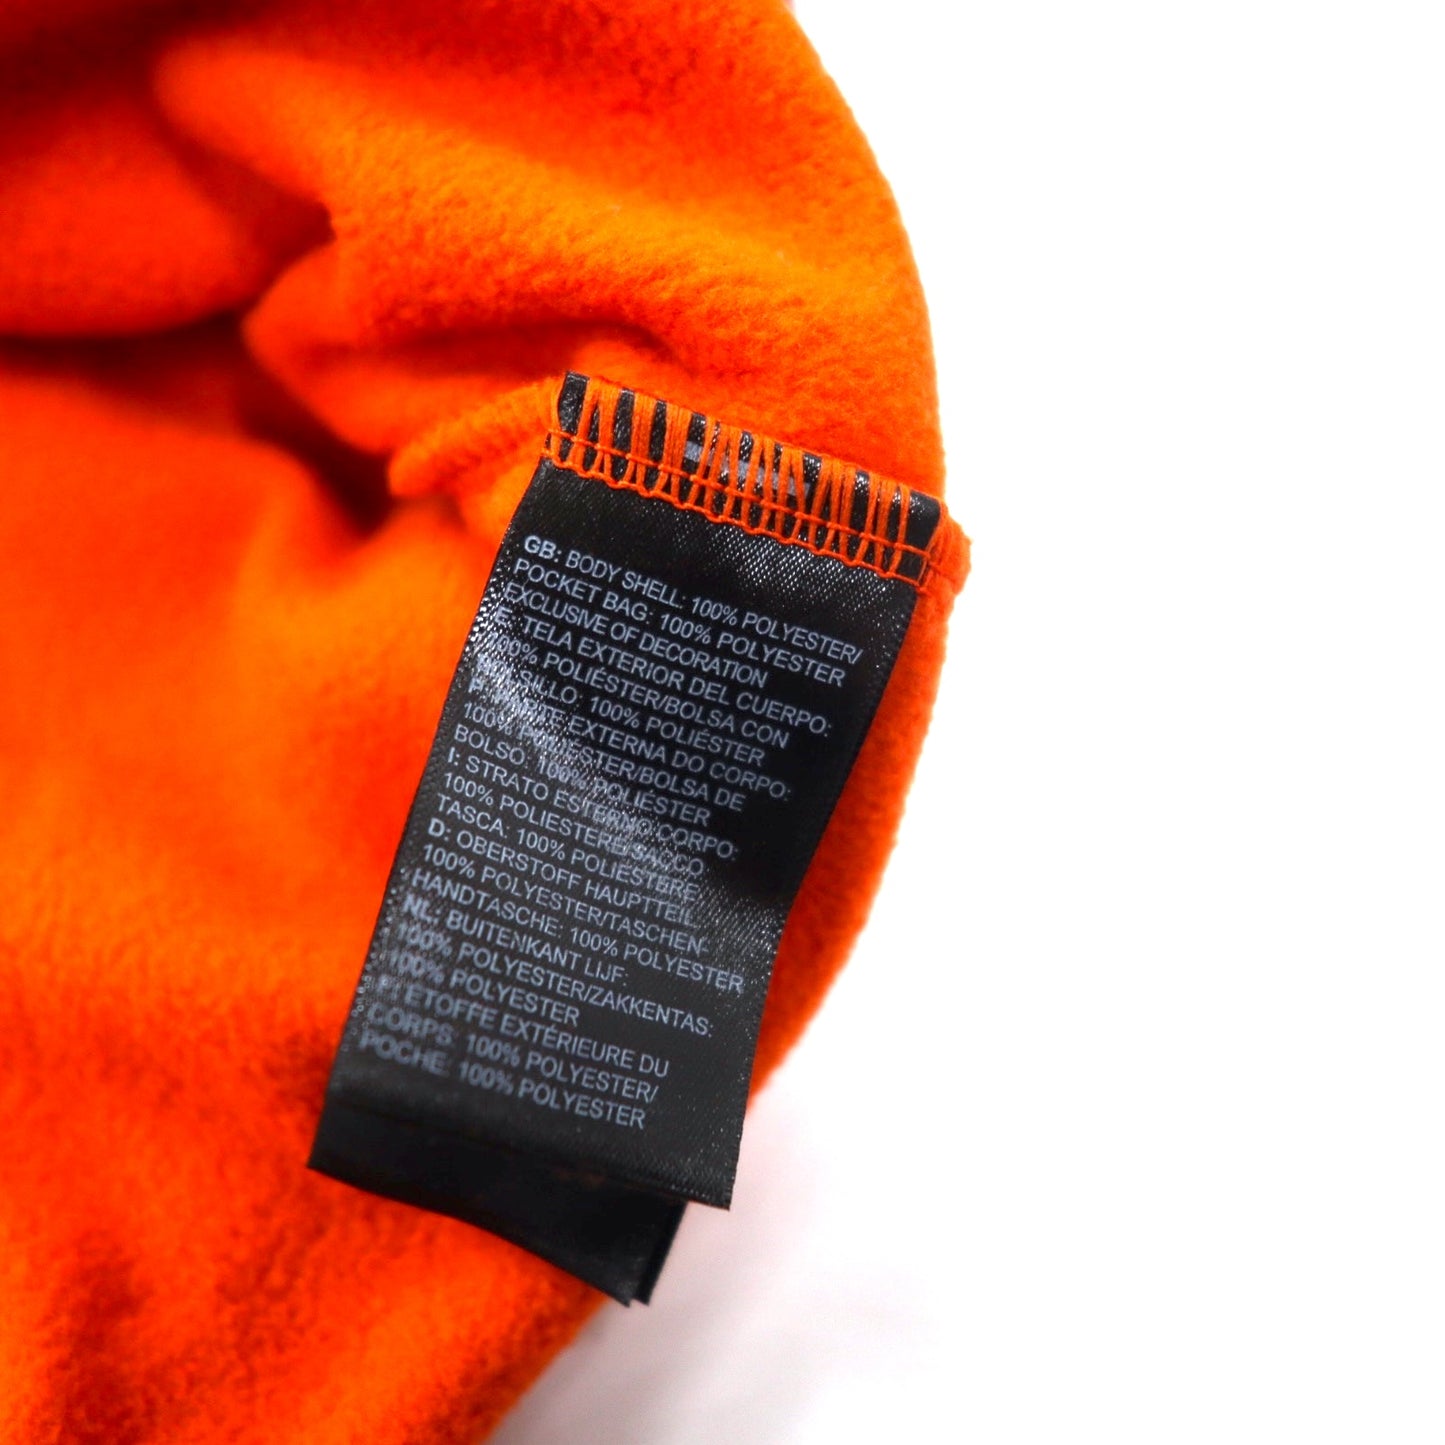 THE NORTH FACE フルジップ フリースジャケット M オレンジ ポリエステル ワンポイントロゴ刺繍 NF0A48KDEL9 エルサルバドル製 未使用品